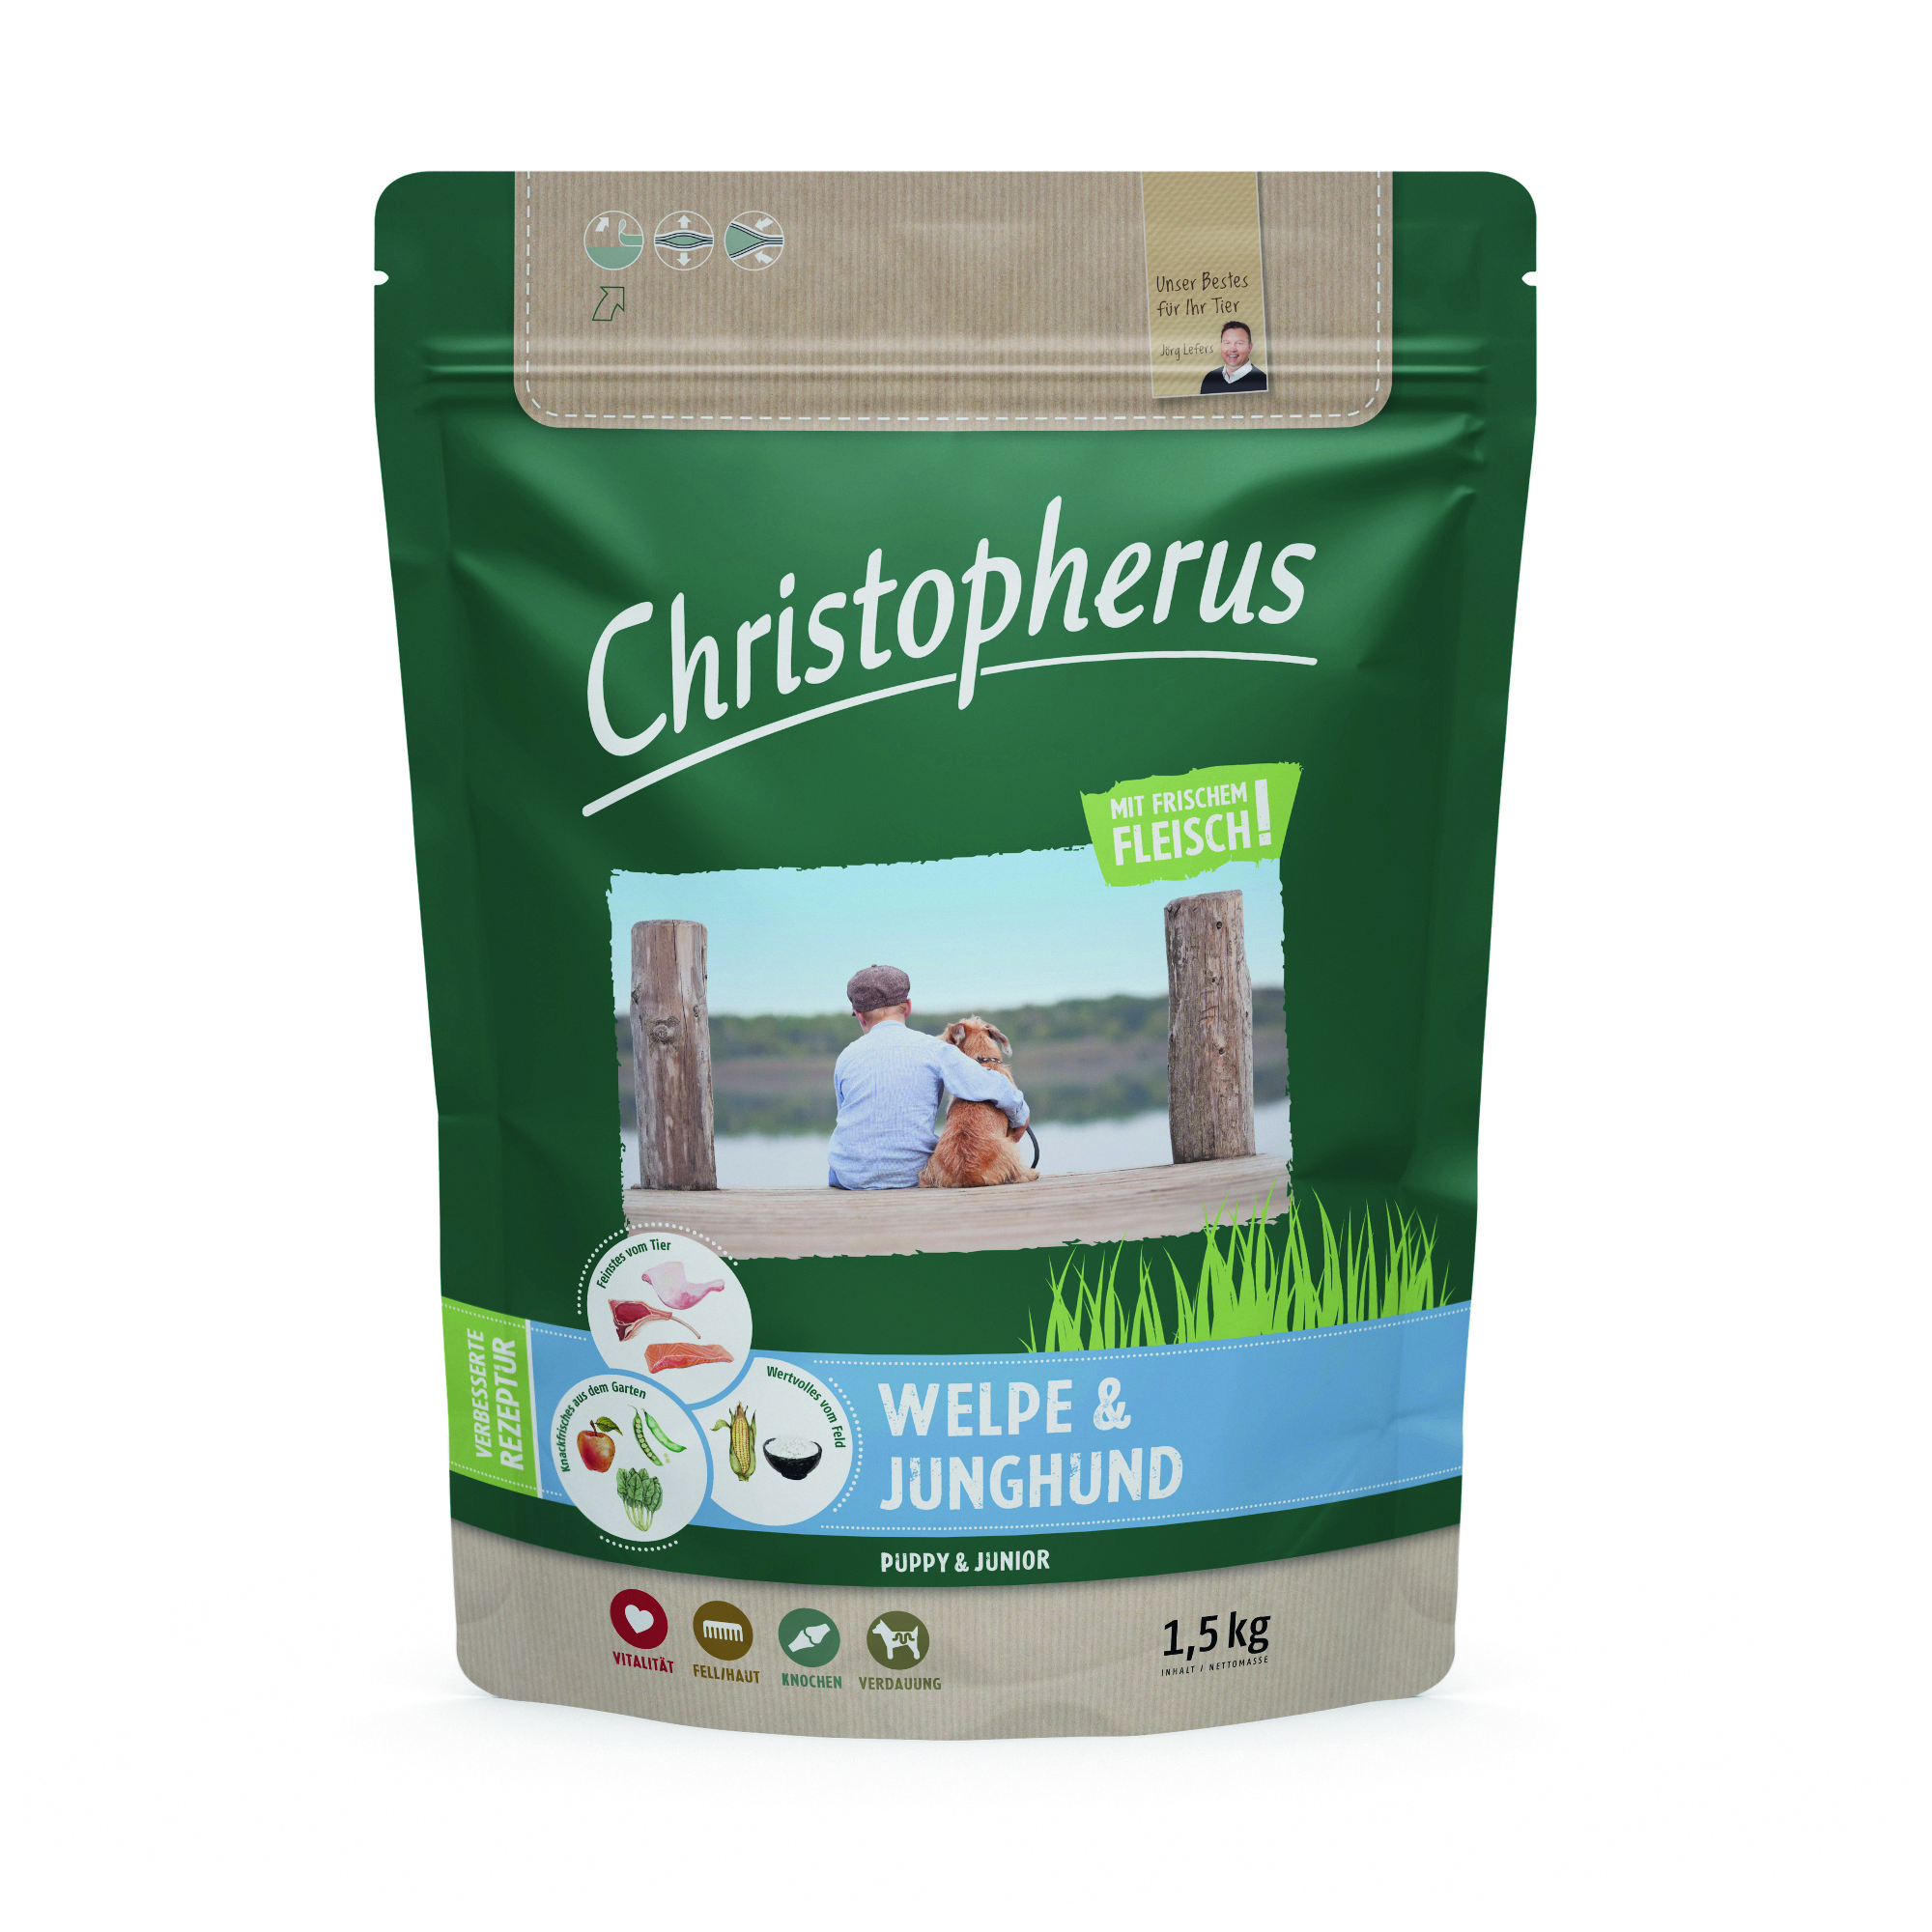 Christopherus Welpe & Junghund 1,5kg